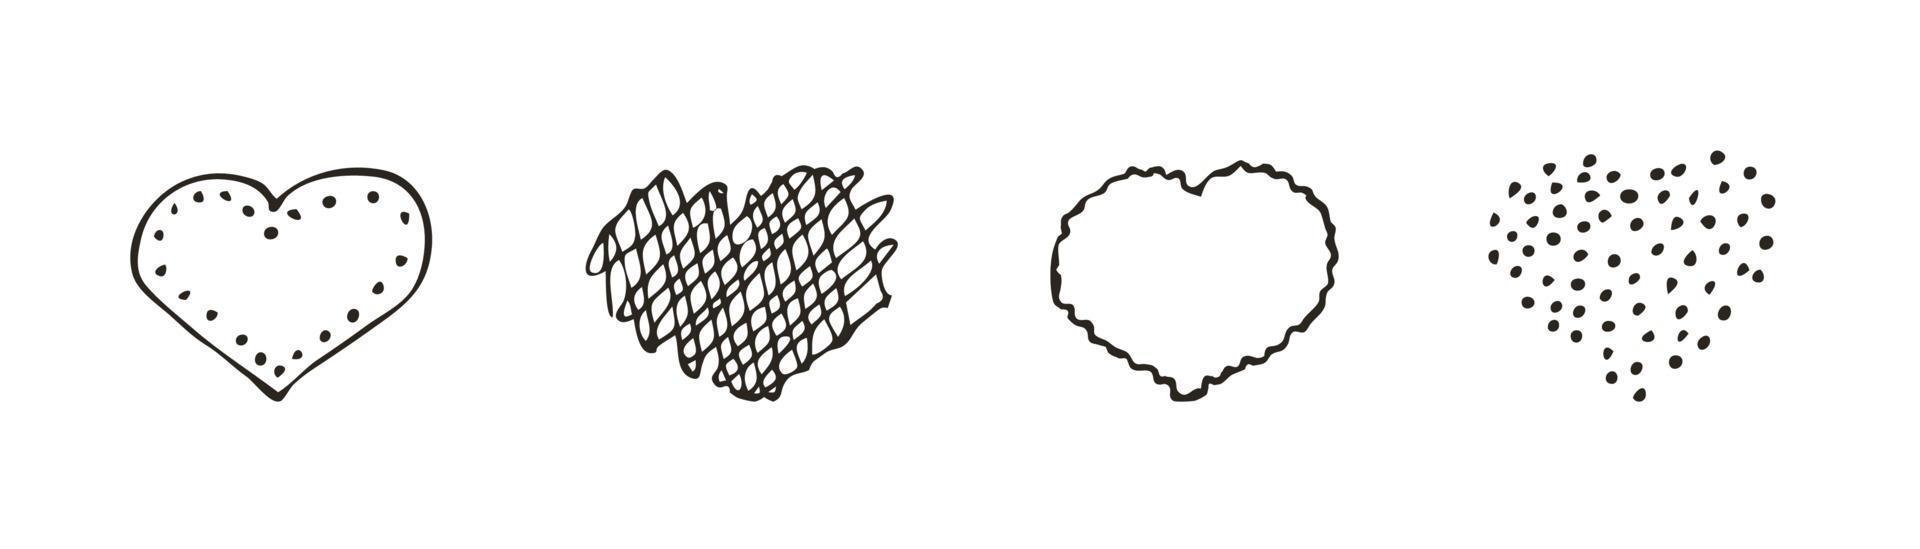 set di icone del cuore di doodle. simbolo d'amore. illustrazione grafica vettoriale disegnato a mano carino isolato su priorità bassa bianca. segno di stile semplice contorno. modello di schizzo d'arte